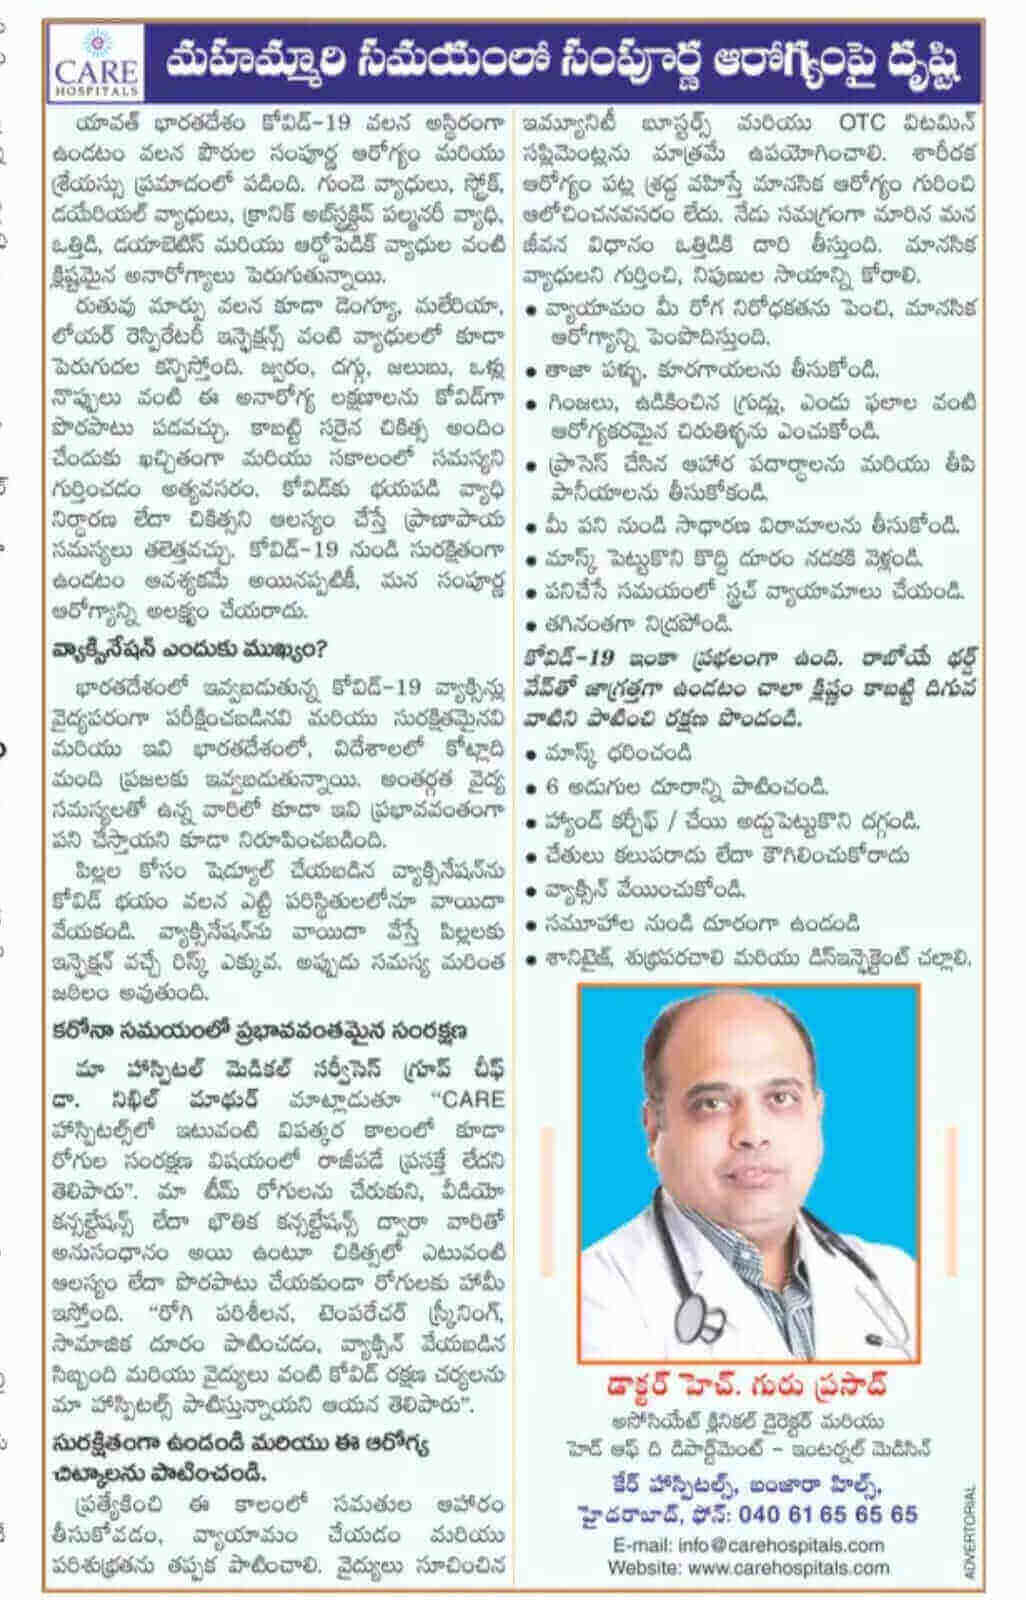 डॉ. एच. गुरु प्रसाद - एसोसिएट क्लिनिकल डायरेक्टर और विभागाध्यक्ष द्वारा लिखित महामारी के दौरान समग्र कल्याण पर ध्यान दें